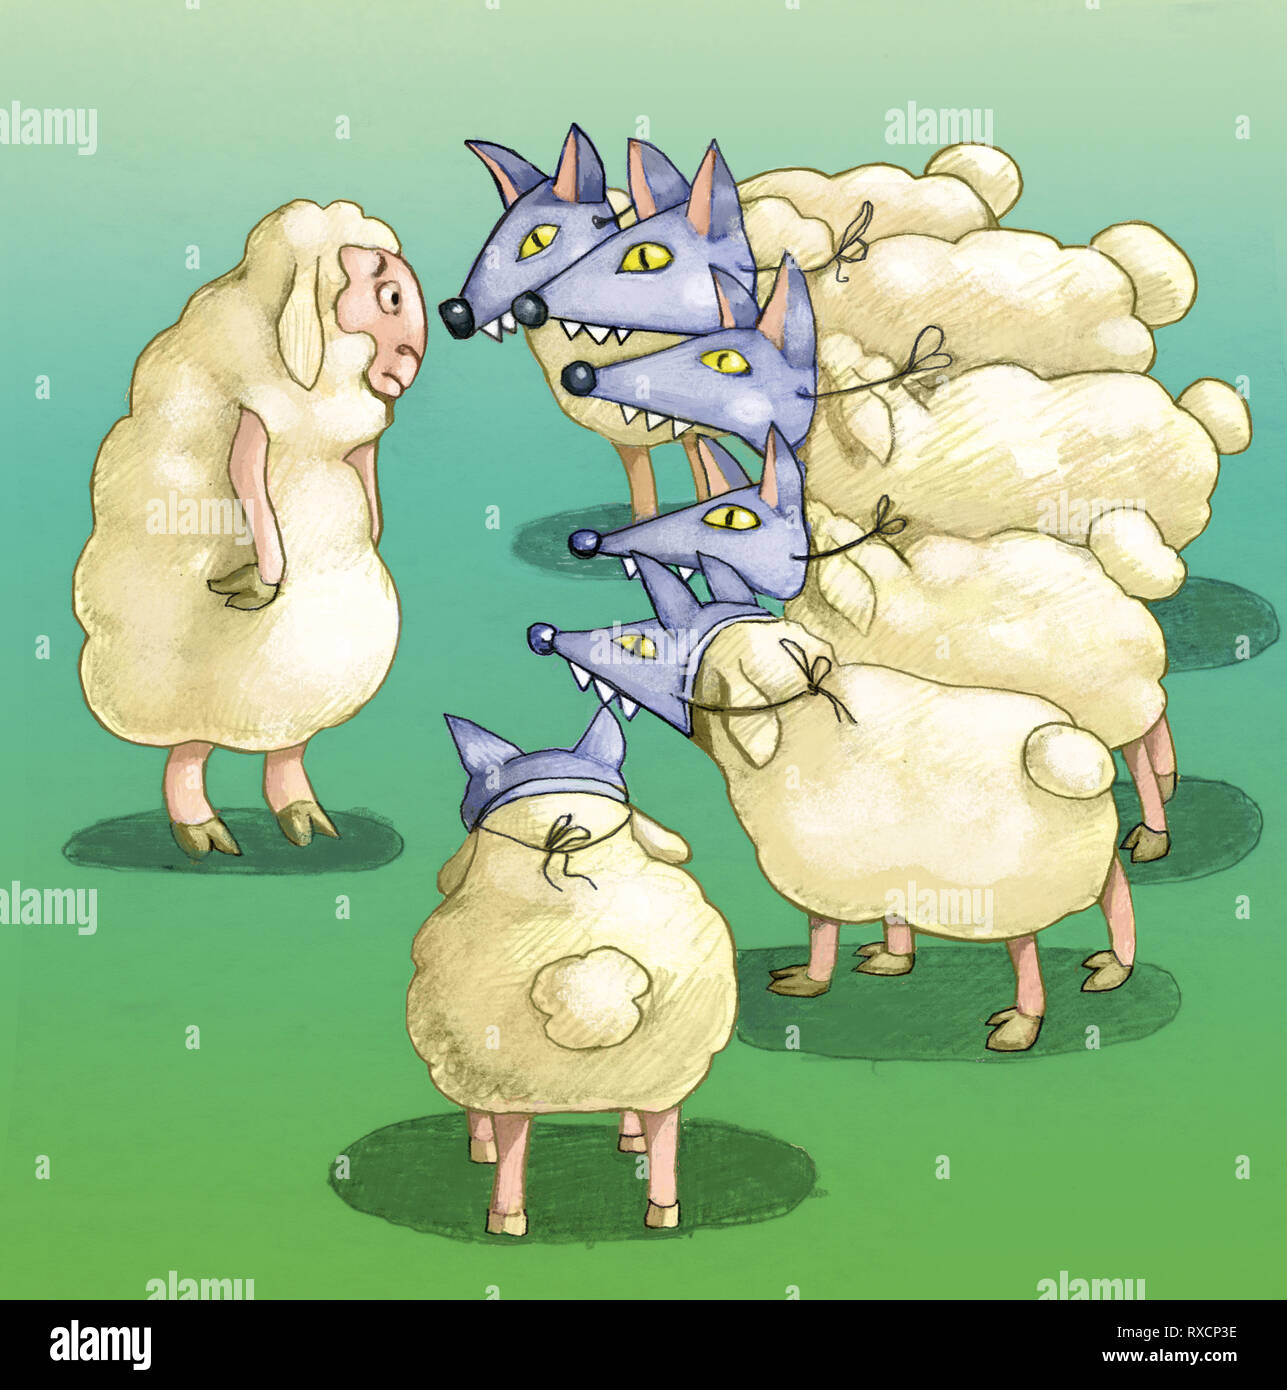 Déguisement de moutons des loups et qu'ils entourent un seul mouton illustration conceptuelle Banque D'Images